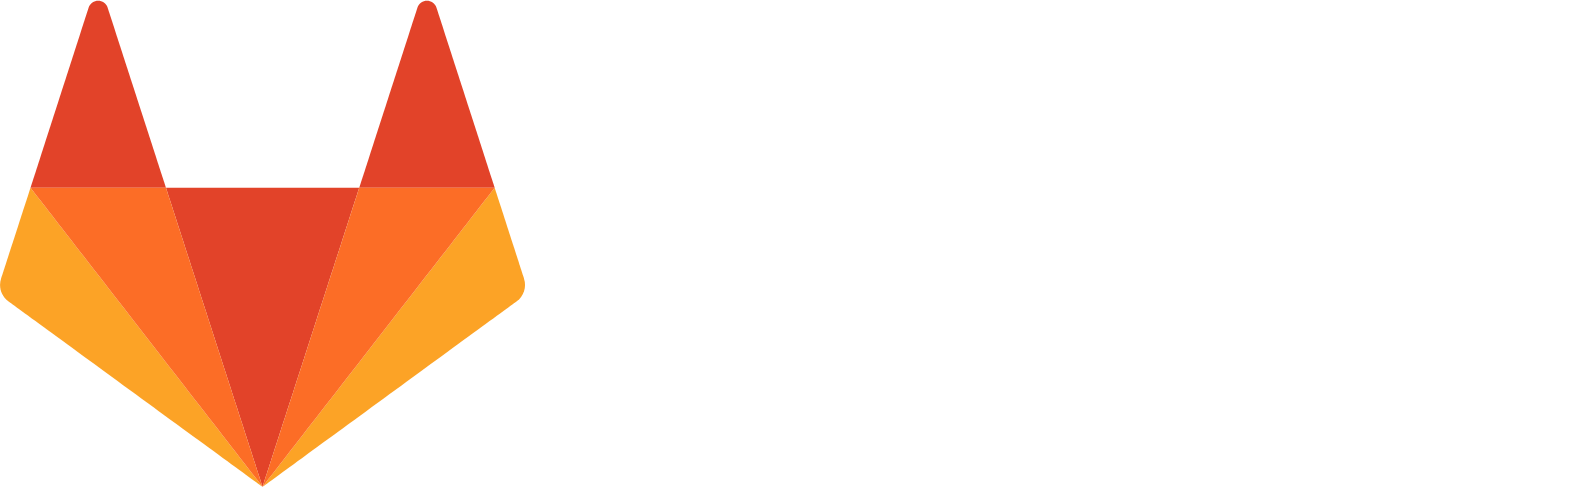 GitLab logo large for dark backgrounds (transparent PNG)